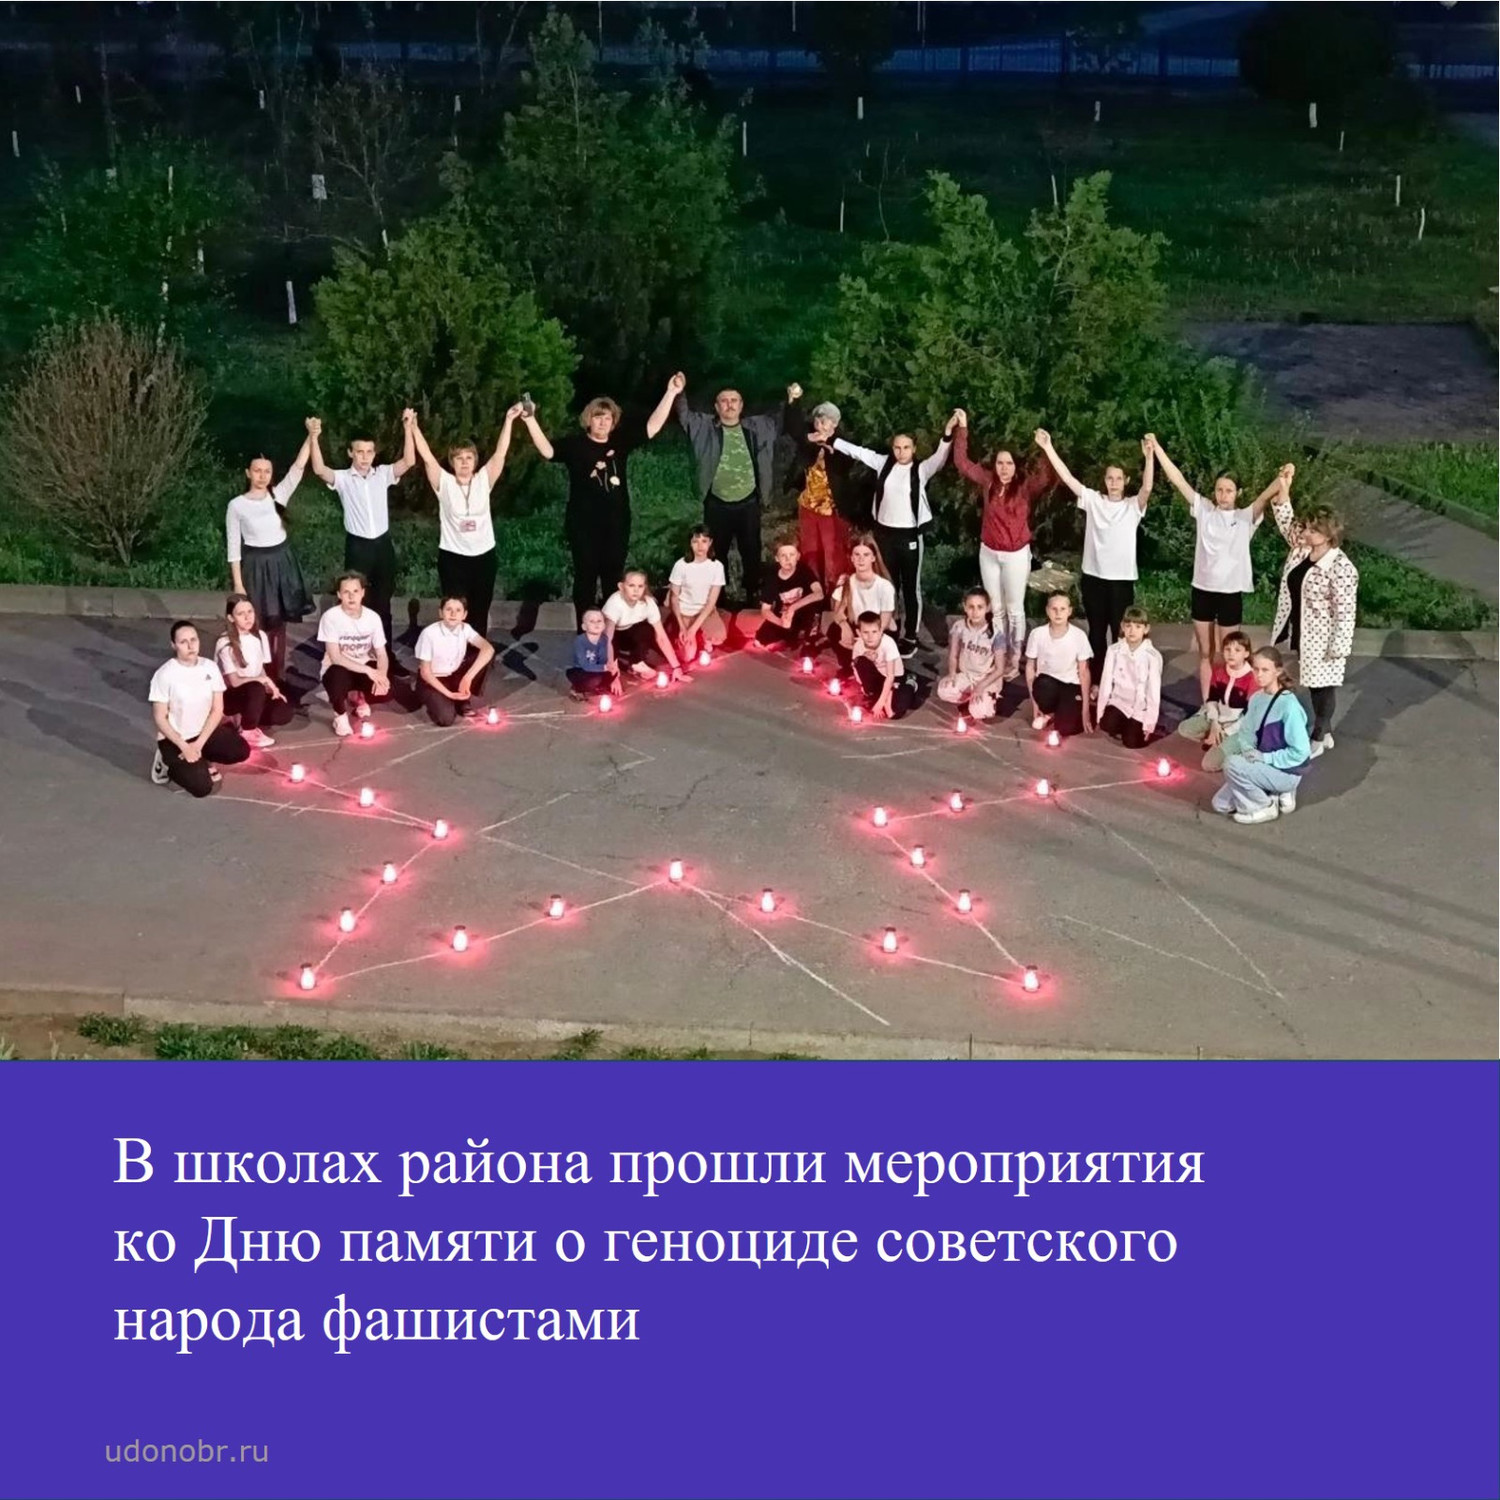 В школах района прошли мероприятия ко Дню памяти о геноциде советского народа фашистами